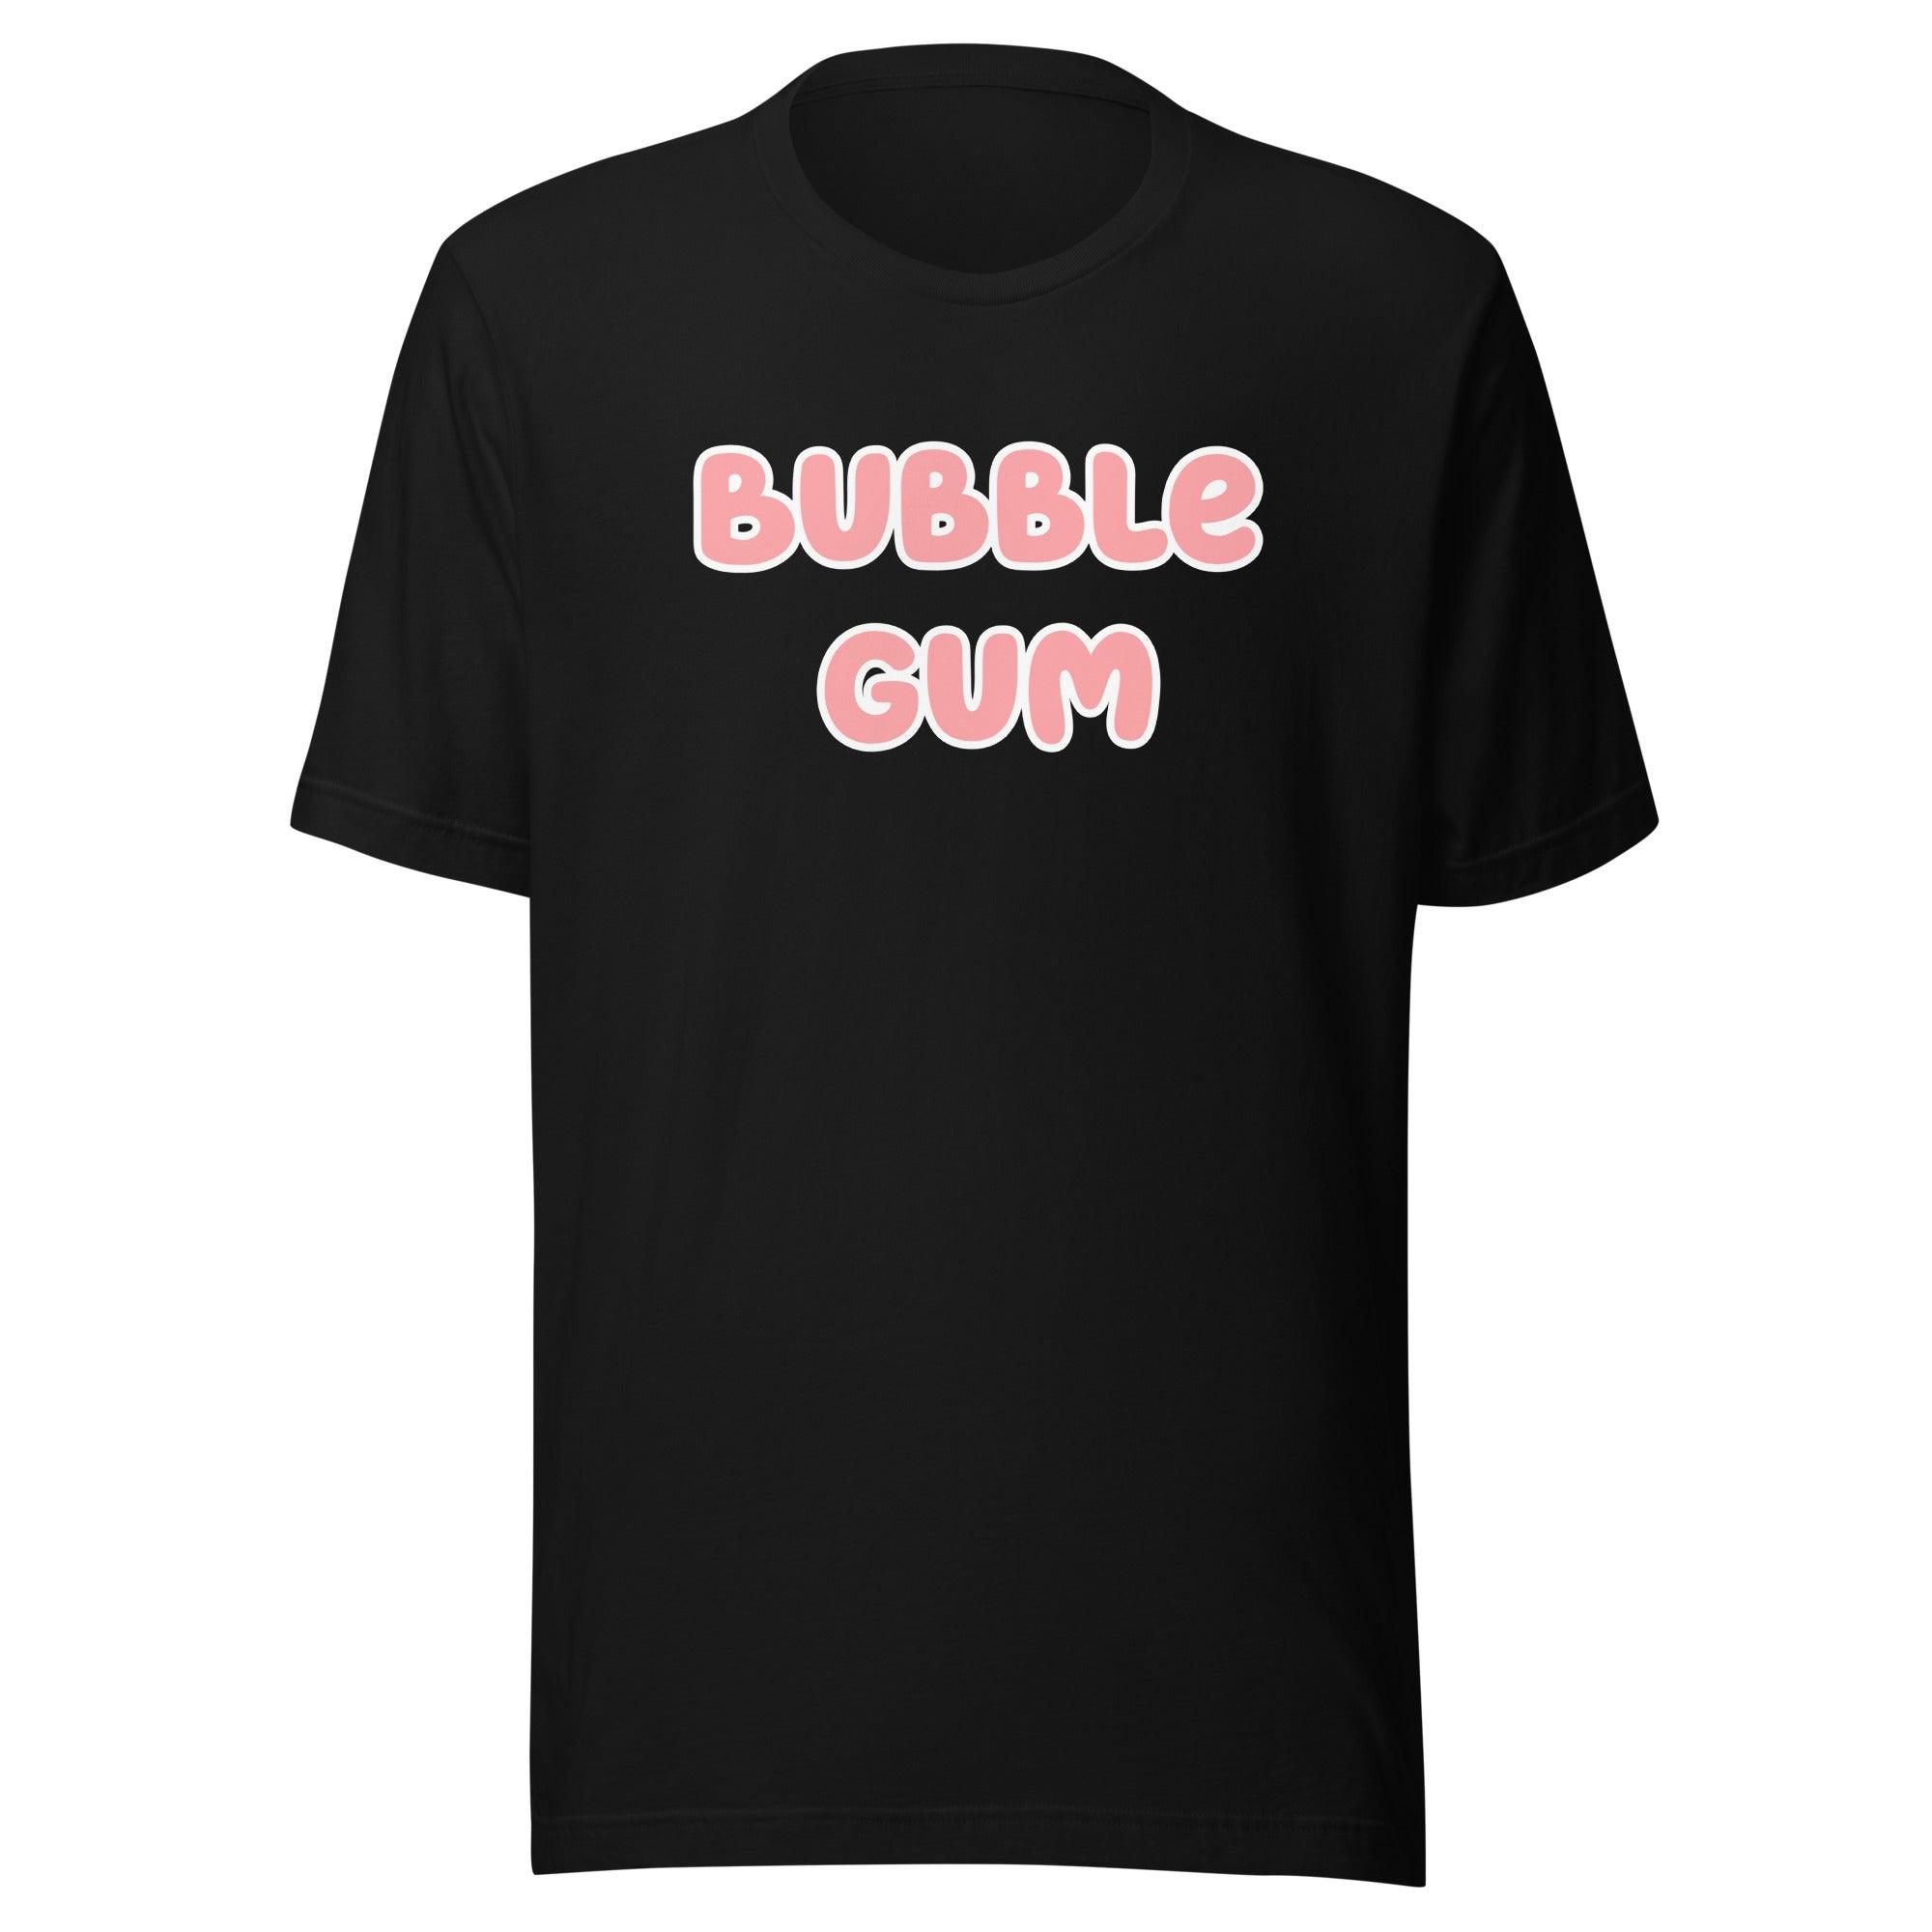 80's Pop Culture T-shirt Bubble Gum Short Sleeve Unisex Top - TopKoalaTee